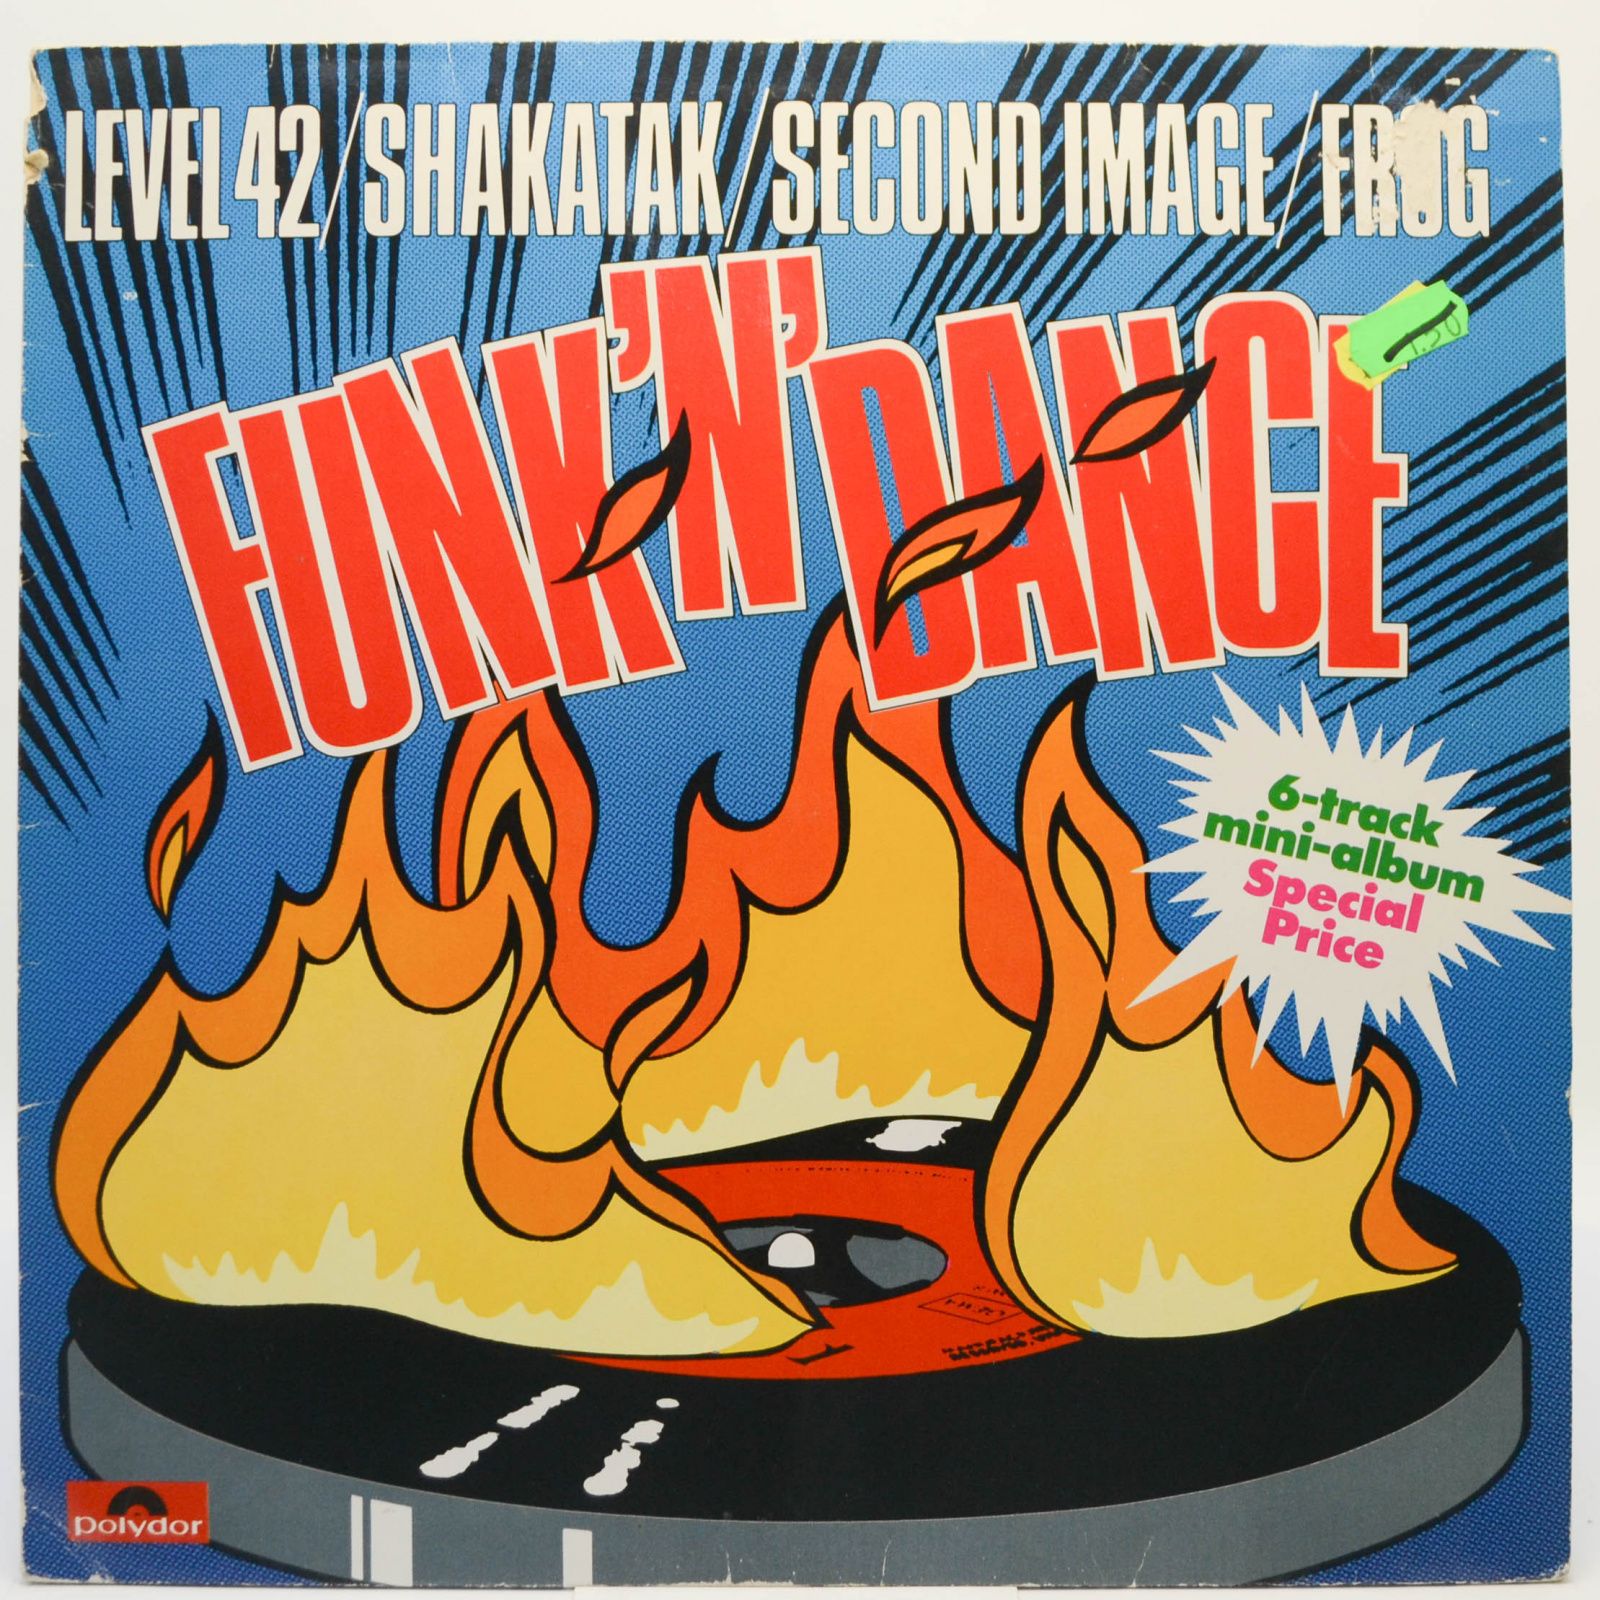 Various — Funk 'n' Dance, 1982